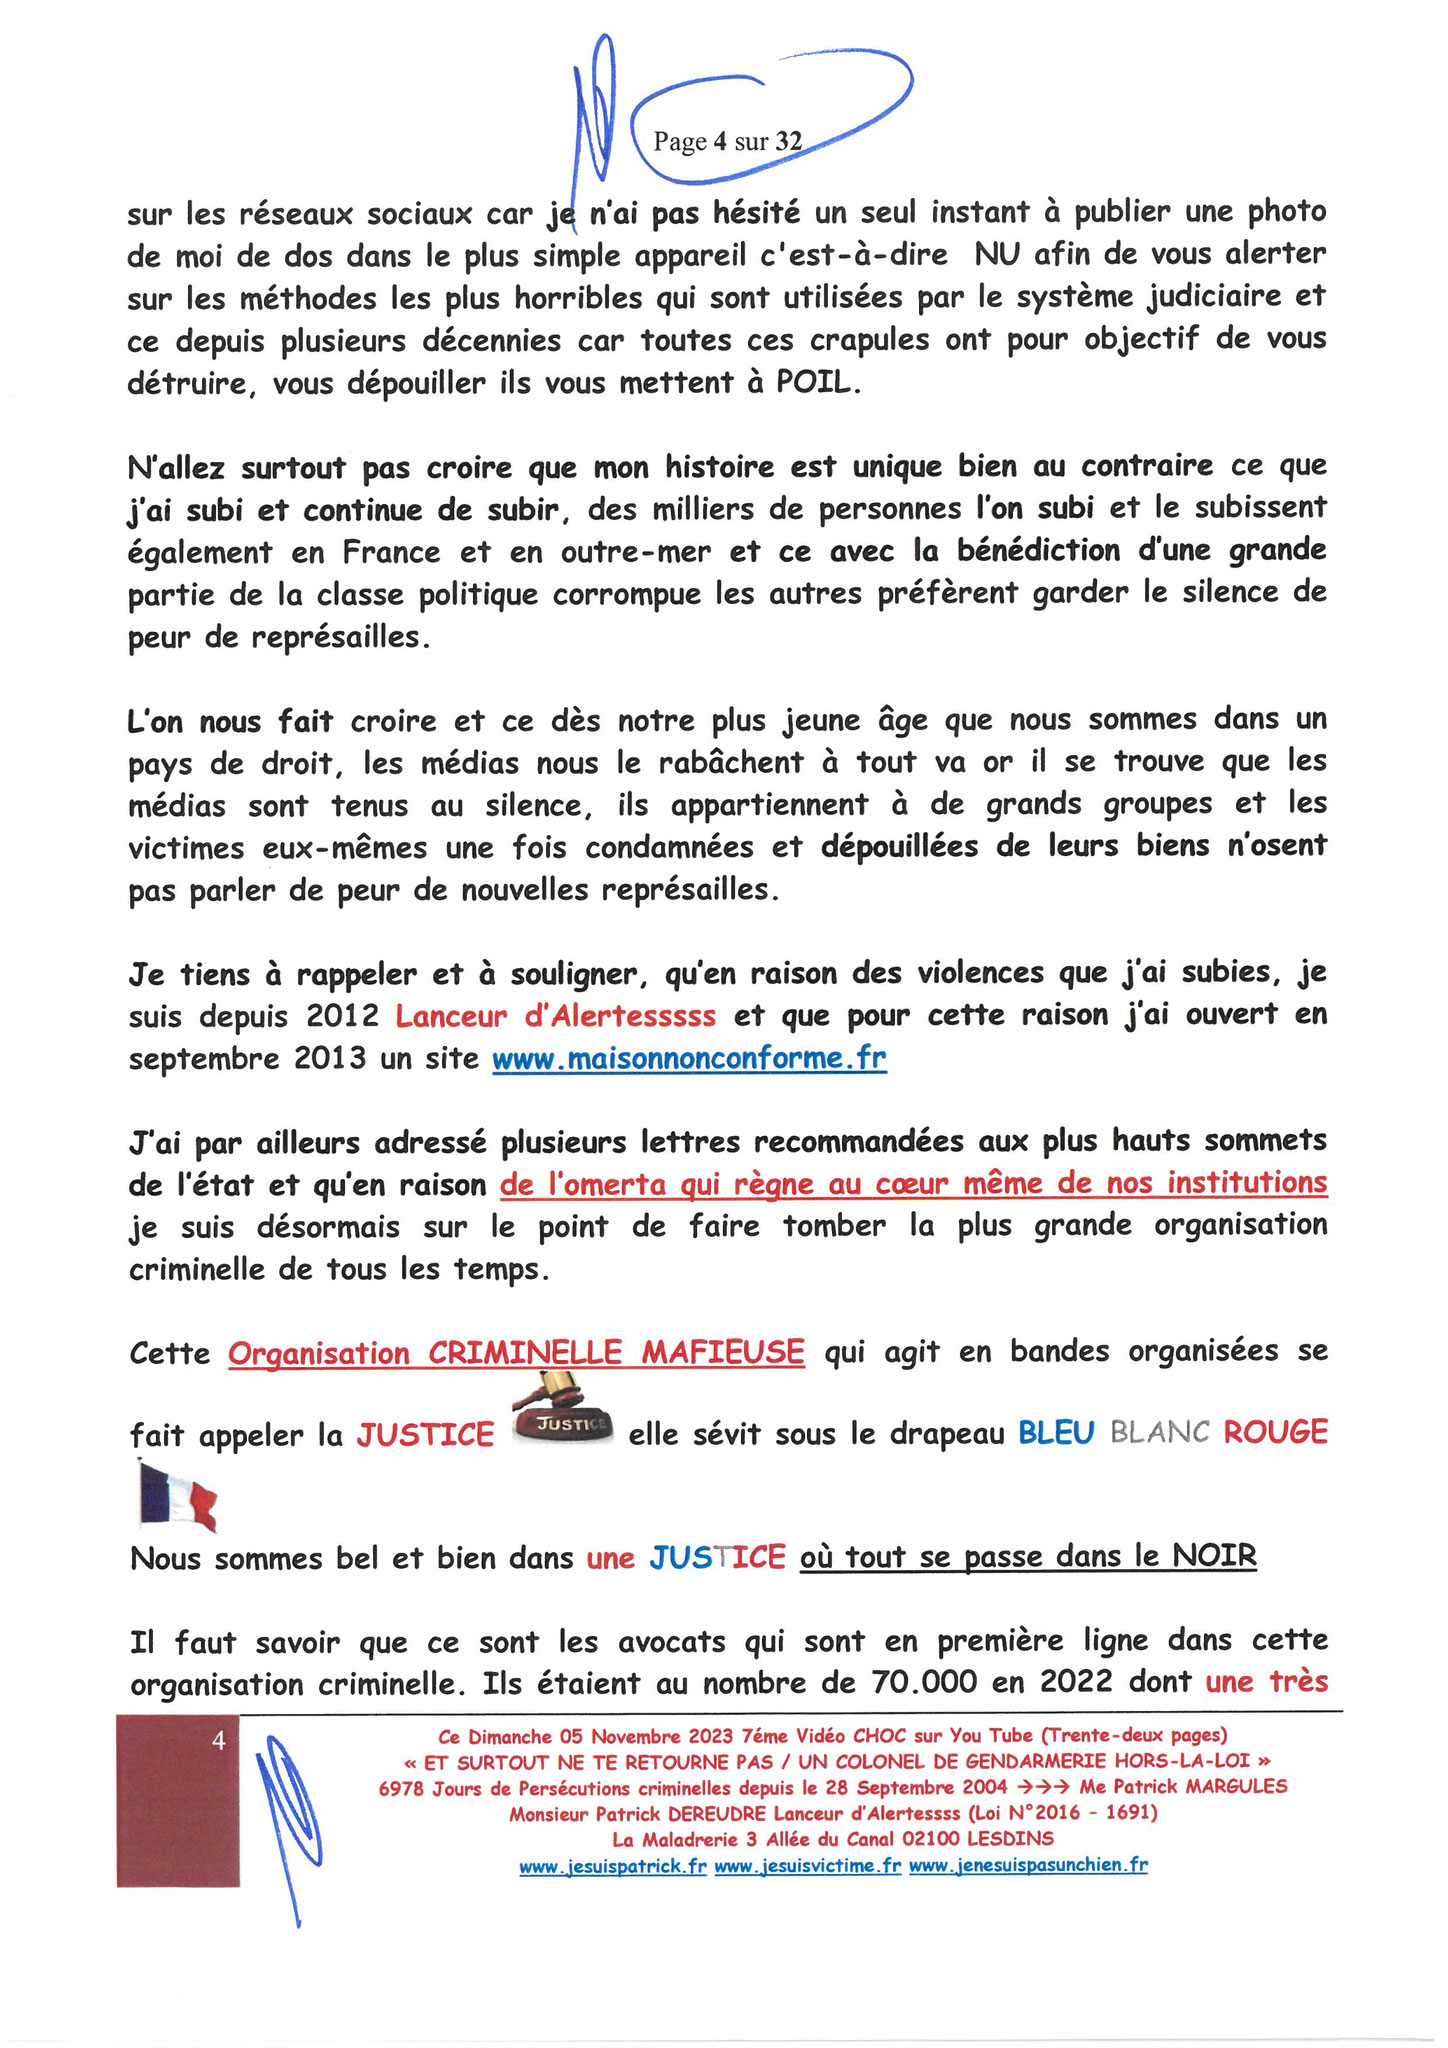 Page 4/32 7ème VIDEO ET SURTOUT NE TE RETOURNE PAS !!! Dimanche 05 Novembre 2023 à 19h10 OPERATION MAINS PROPRES #StopCorruptionStop  www.jenesuispasunchien.fr www.jesuisvictime.fr www.jesuispatrick.fr PARJURE & CORRUPTION AU COEUR MÊME DE LA JUSTICE